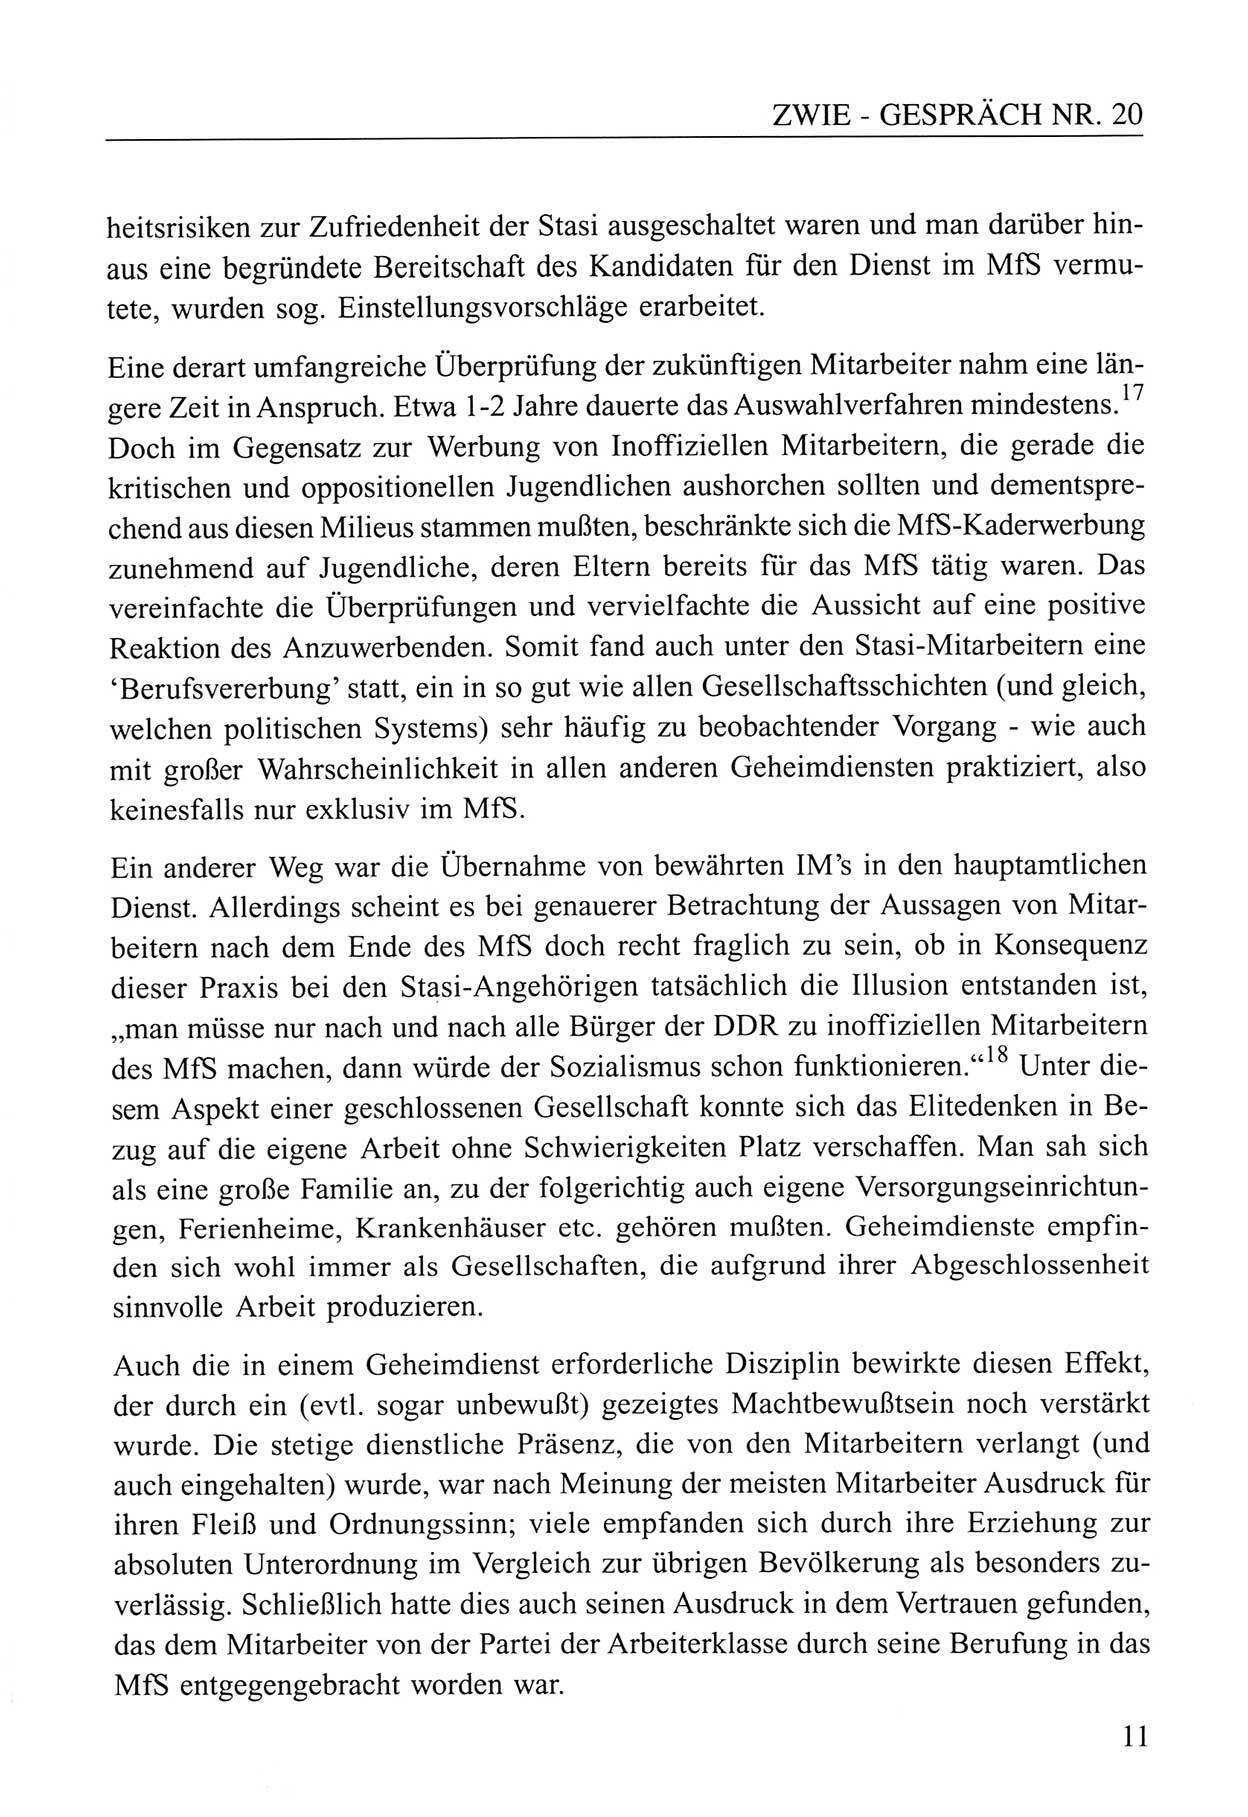 Zwie-Gespräch, Beiträge zum Umgang mit der Staatssicherheits-Vergangenheit [Deutsche Demokratische Republik (DDR)], Ausgabe Nr. 20, Berlin 1994, Seite 11 (Zwie-Gespr. Ausg. 20 1994, S. 11)